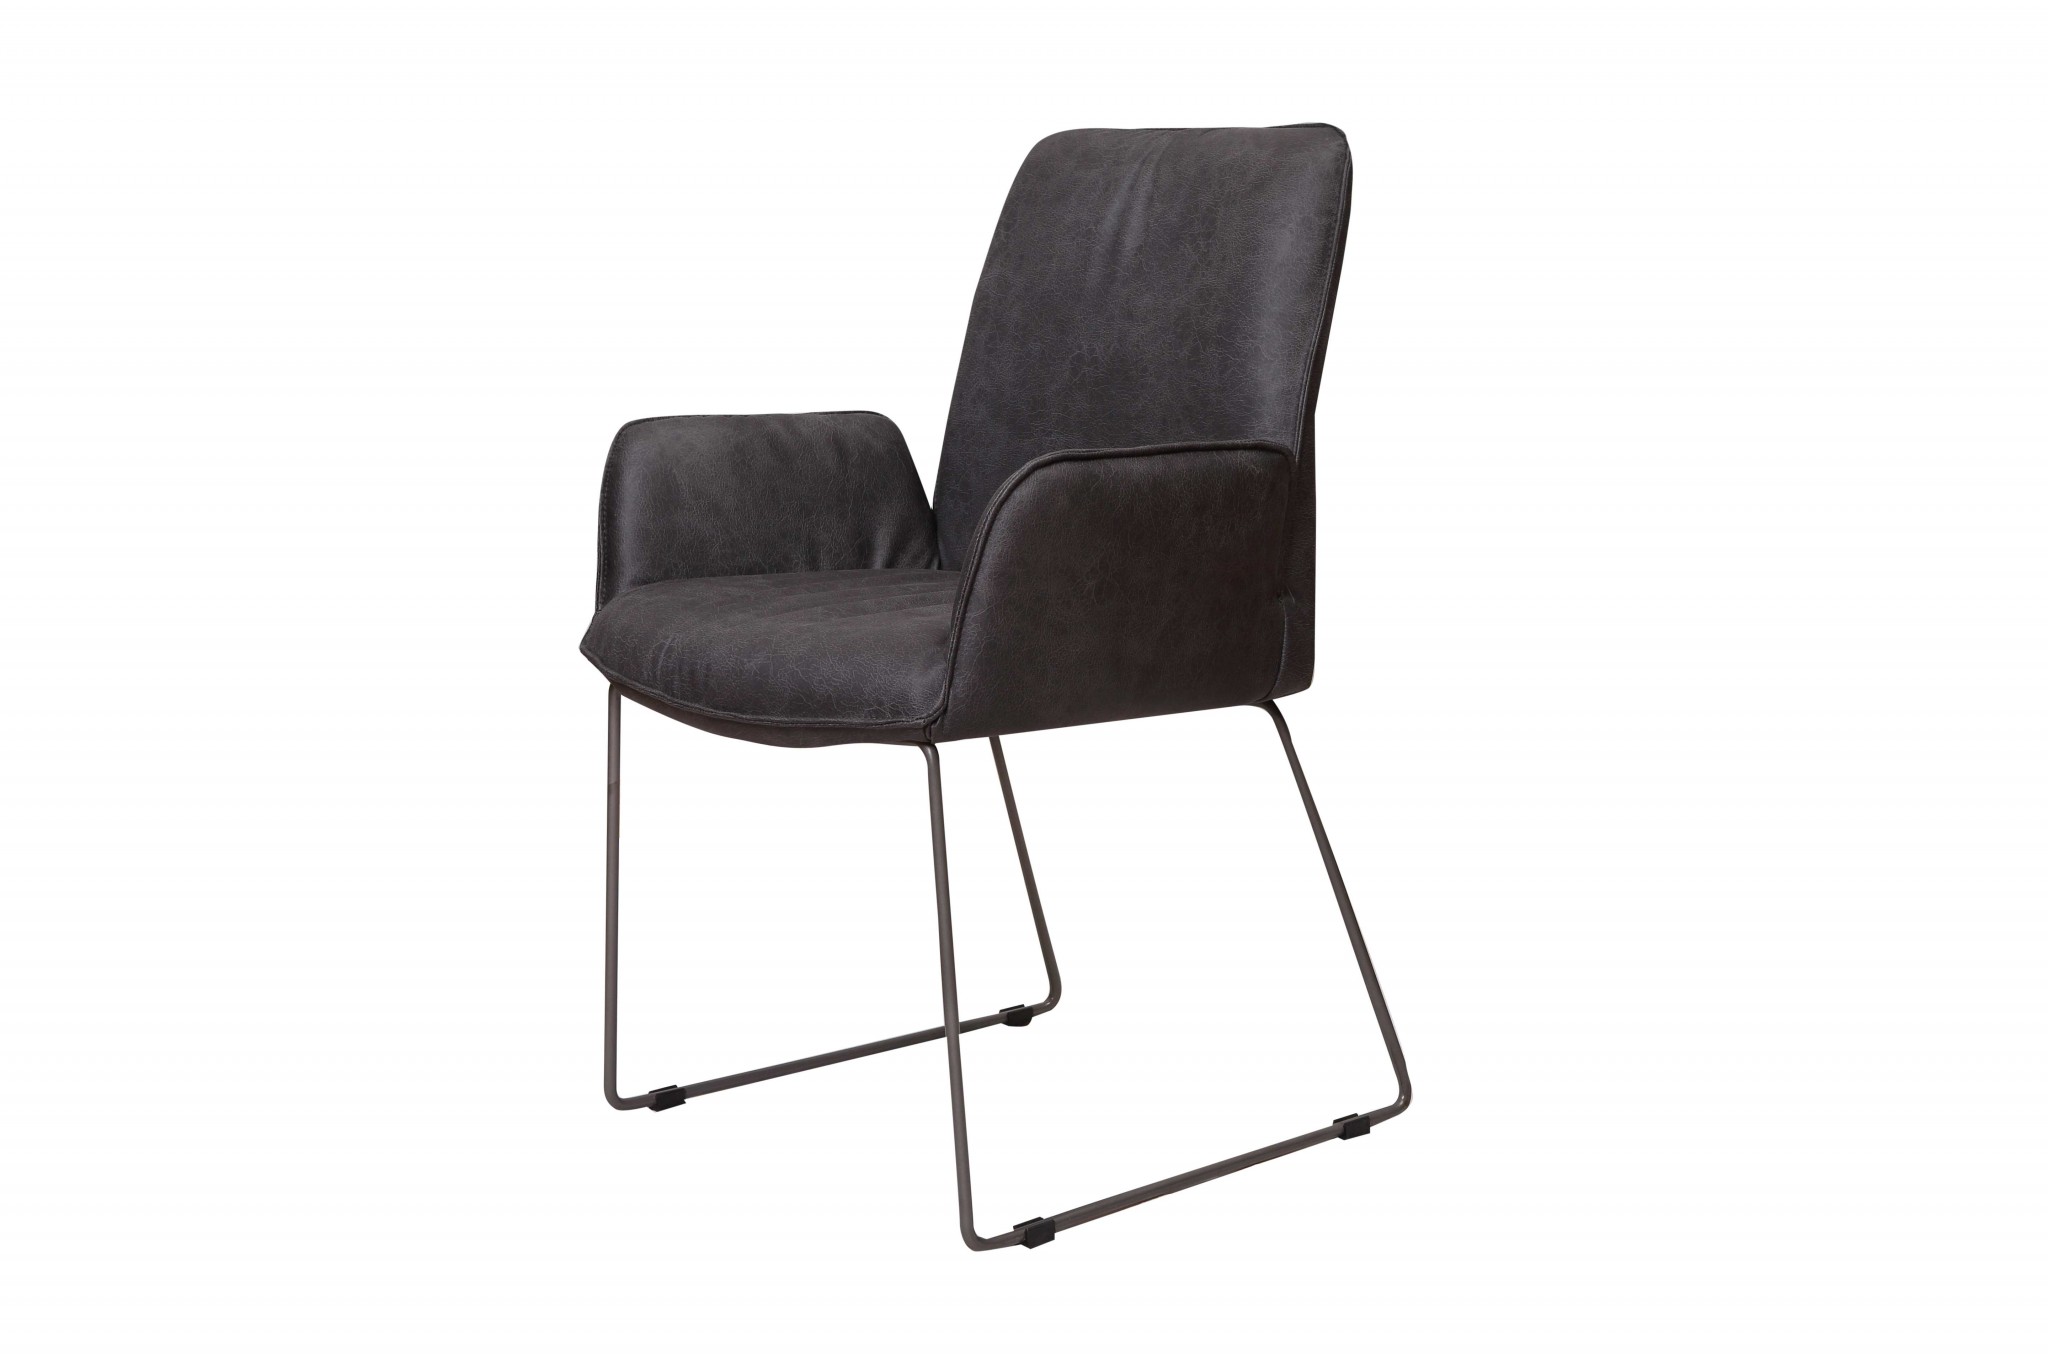 25" X 25" X 35" Grey Foam Metal Fabric Plywood Arm Chair